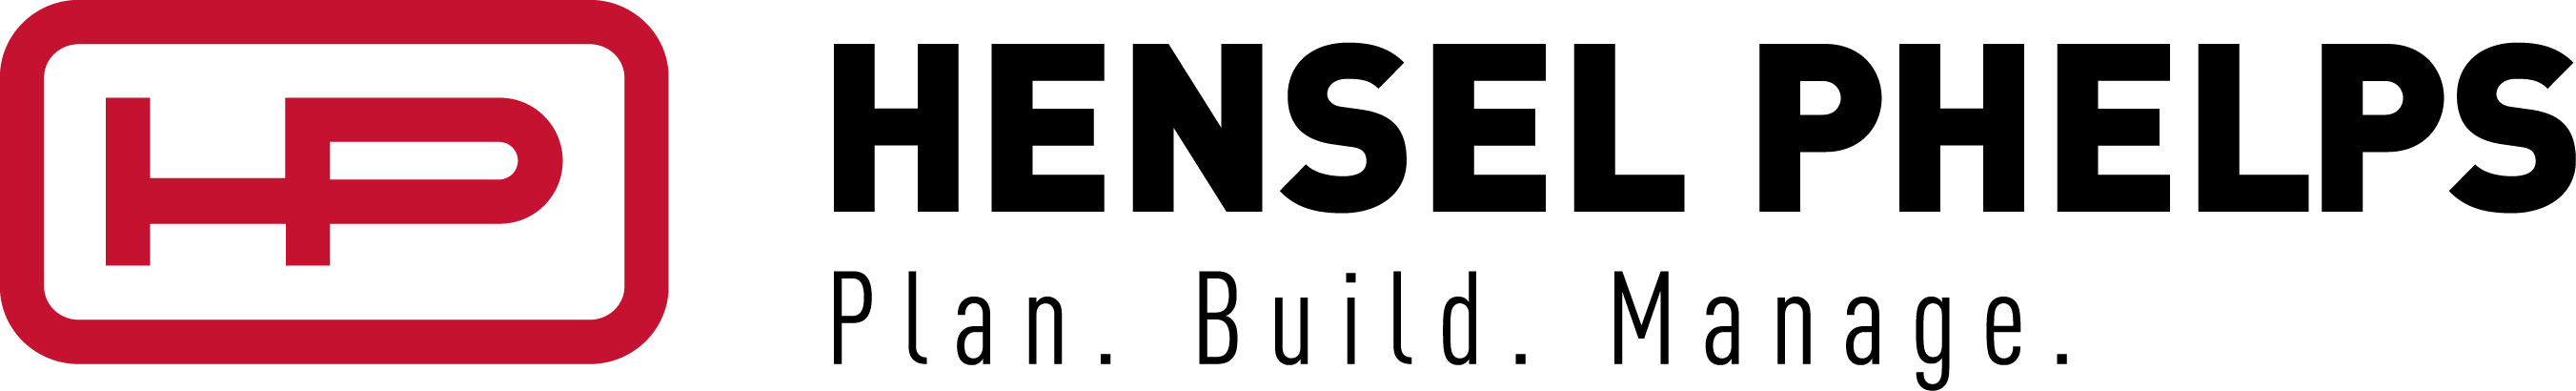 hensel-phelps-plan-build-manage-logo